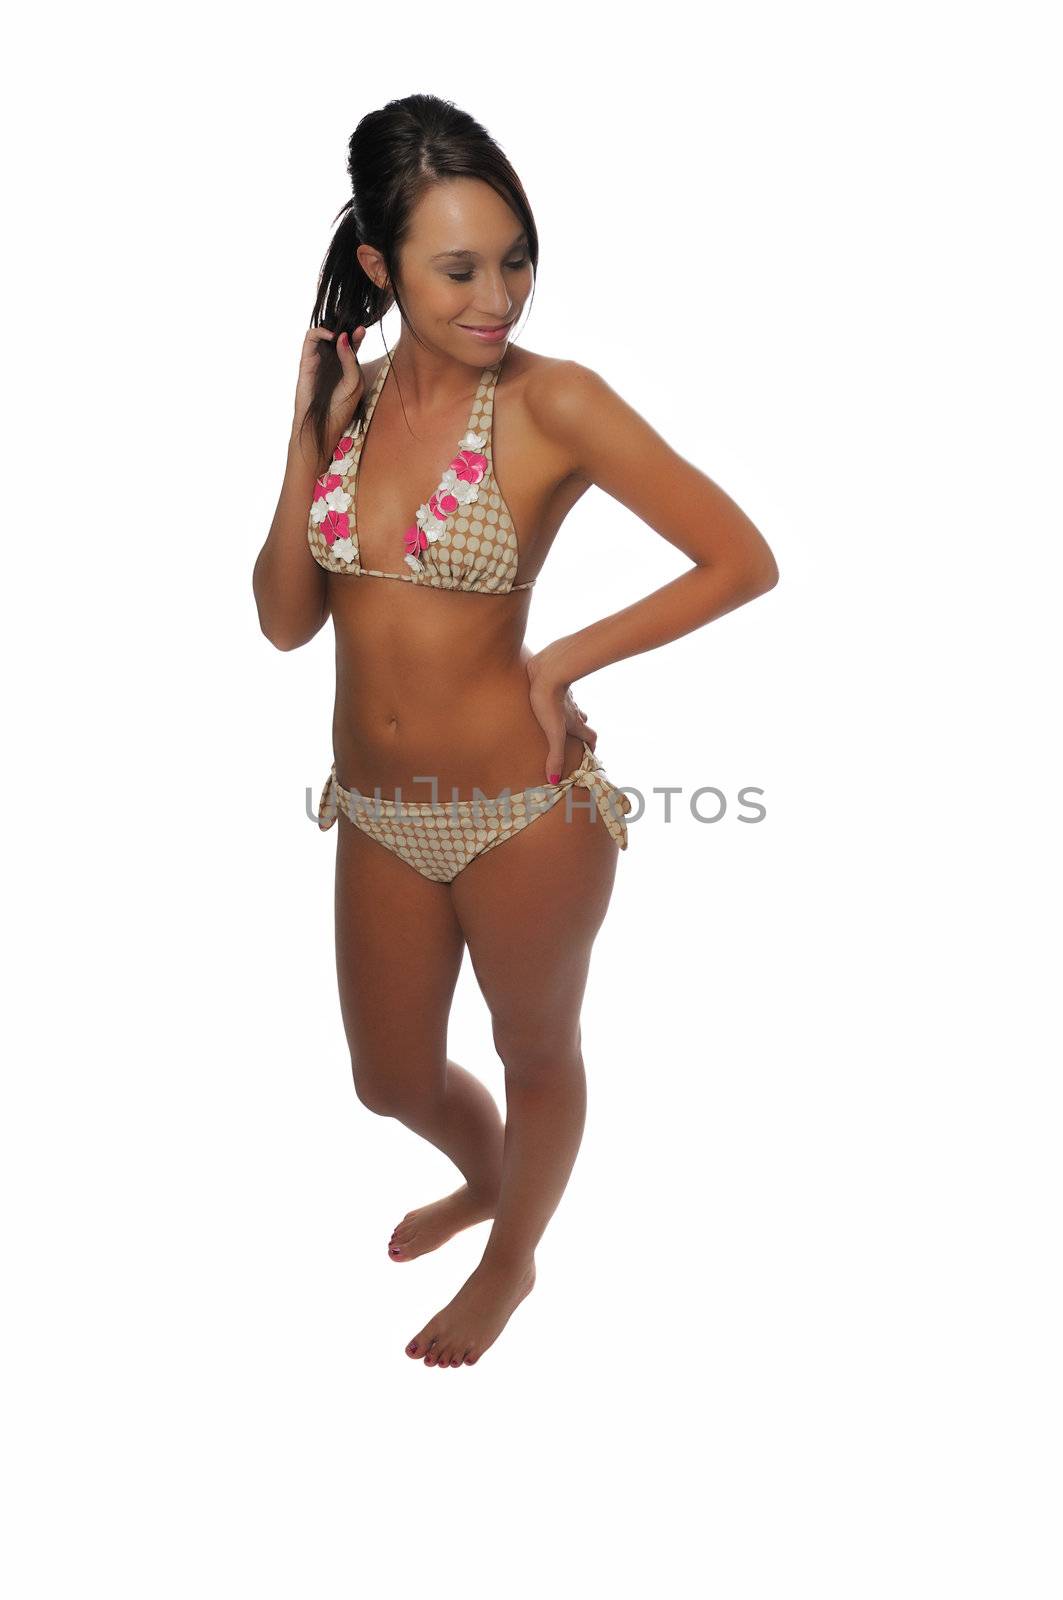 beautiful young woman having fun in a bikini